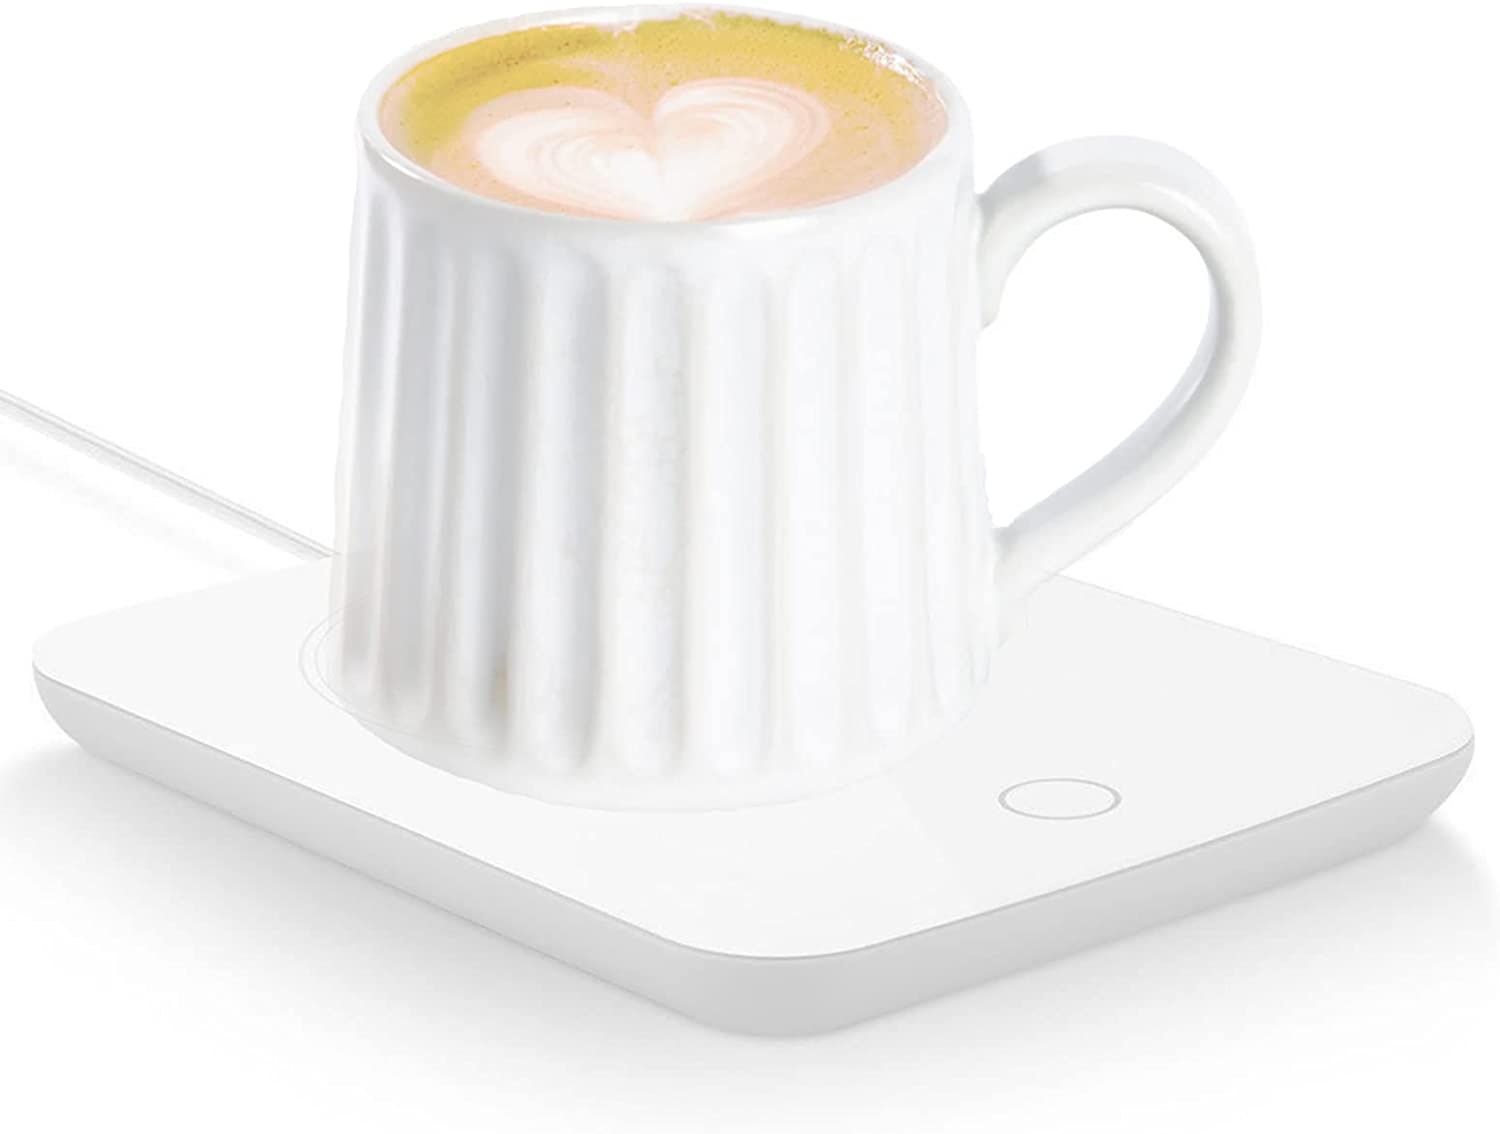 misby coffee warmer review｜TikTok Search